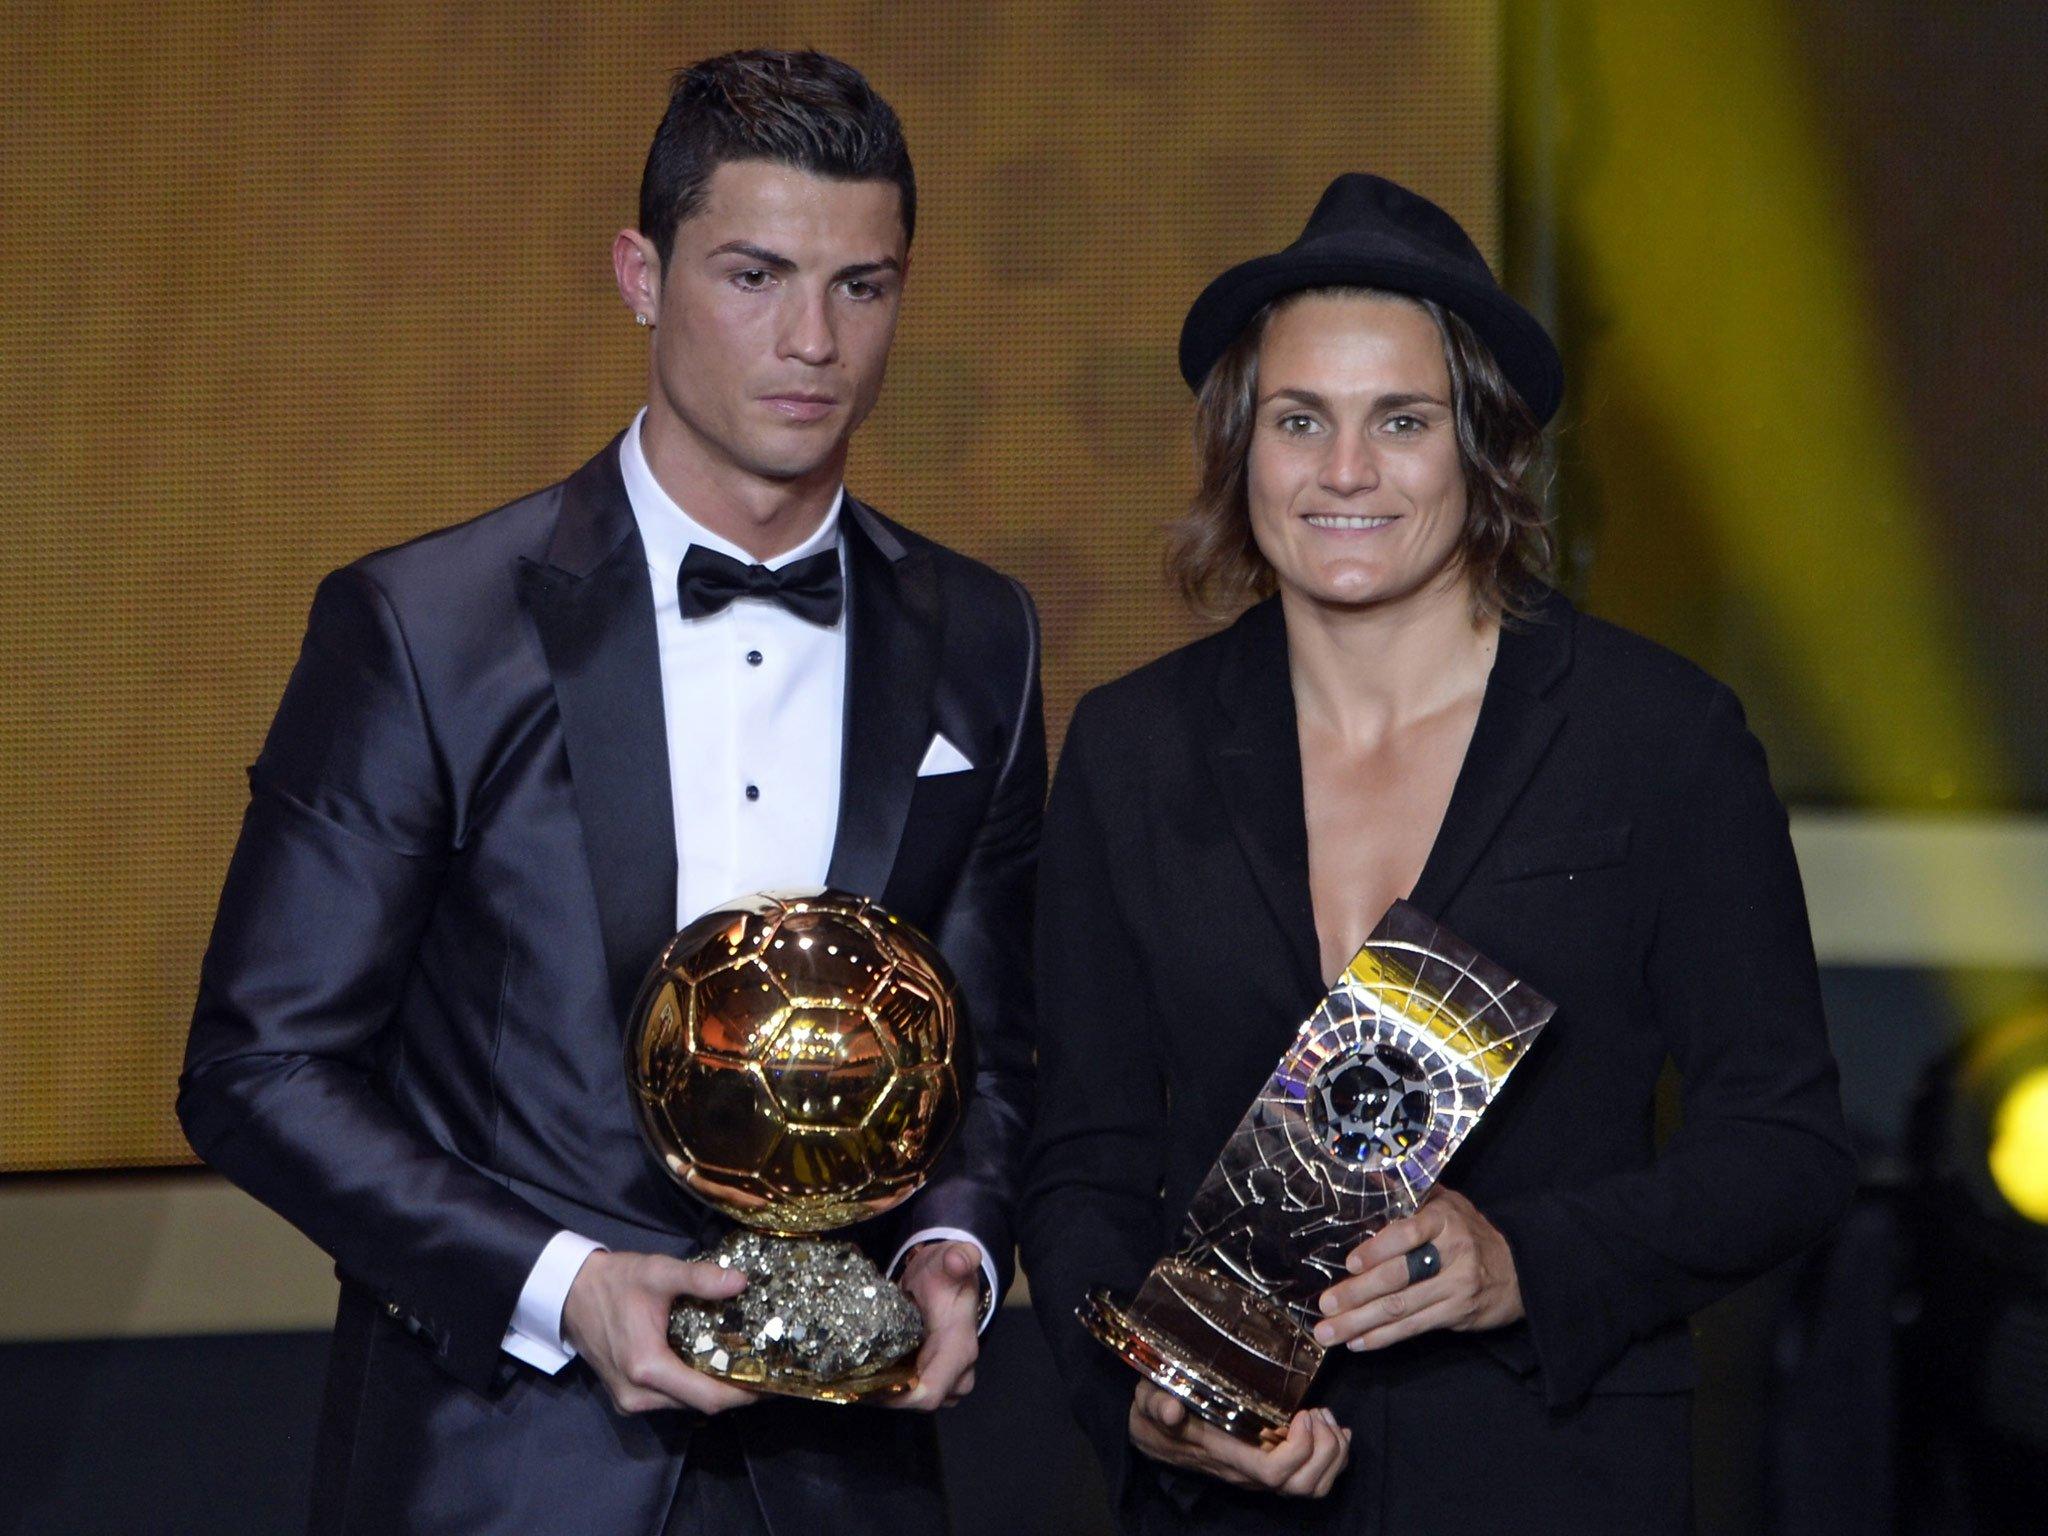 Fifa Ballon d'Or: Nadine Angerer, winner of the women's award